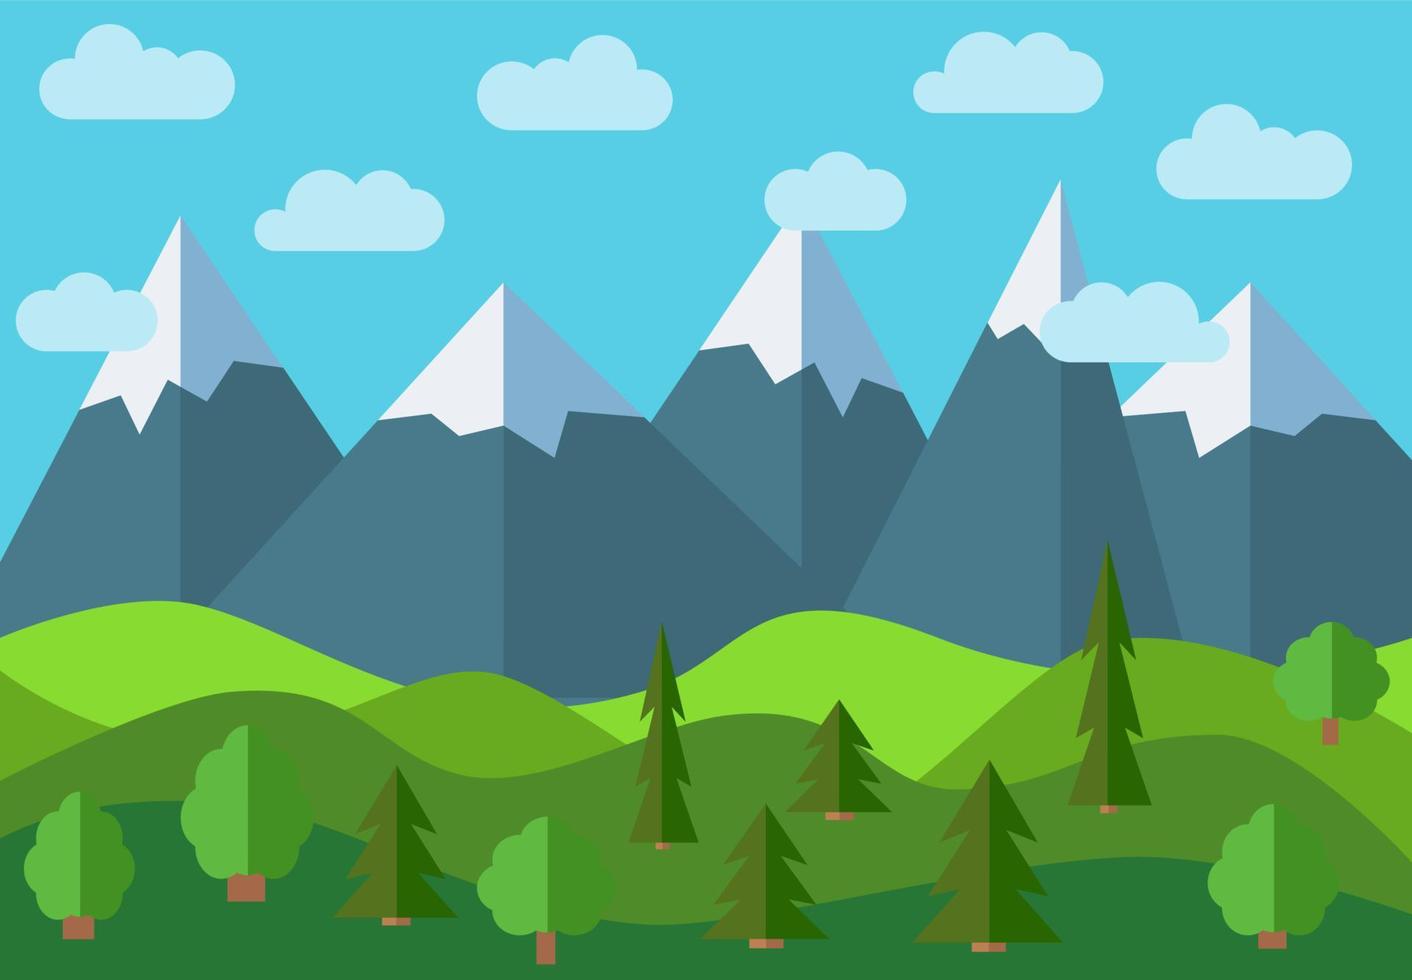 paisaje de dibujos animados de montaña panorámica vectorial. paisaje natural de estilo plano con cielo azul, nubes, árboles, colinas y montañas con nieve en los picos. vector